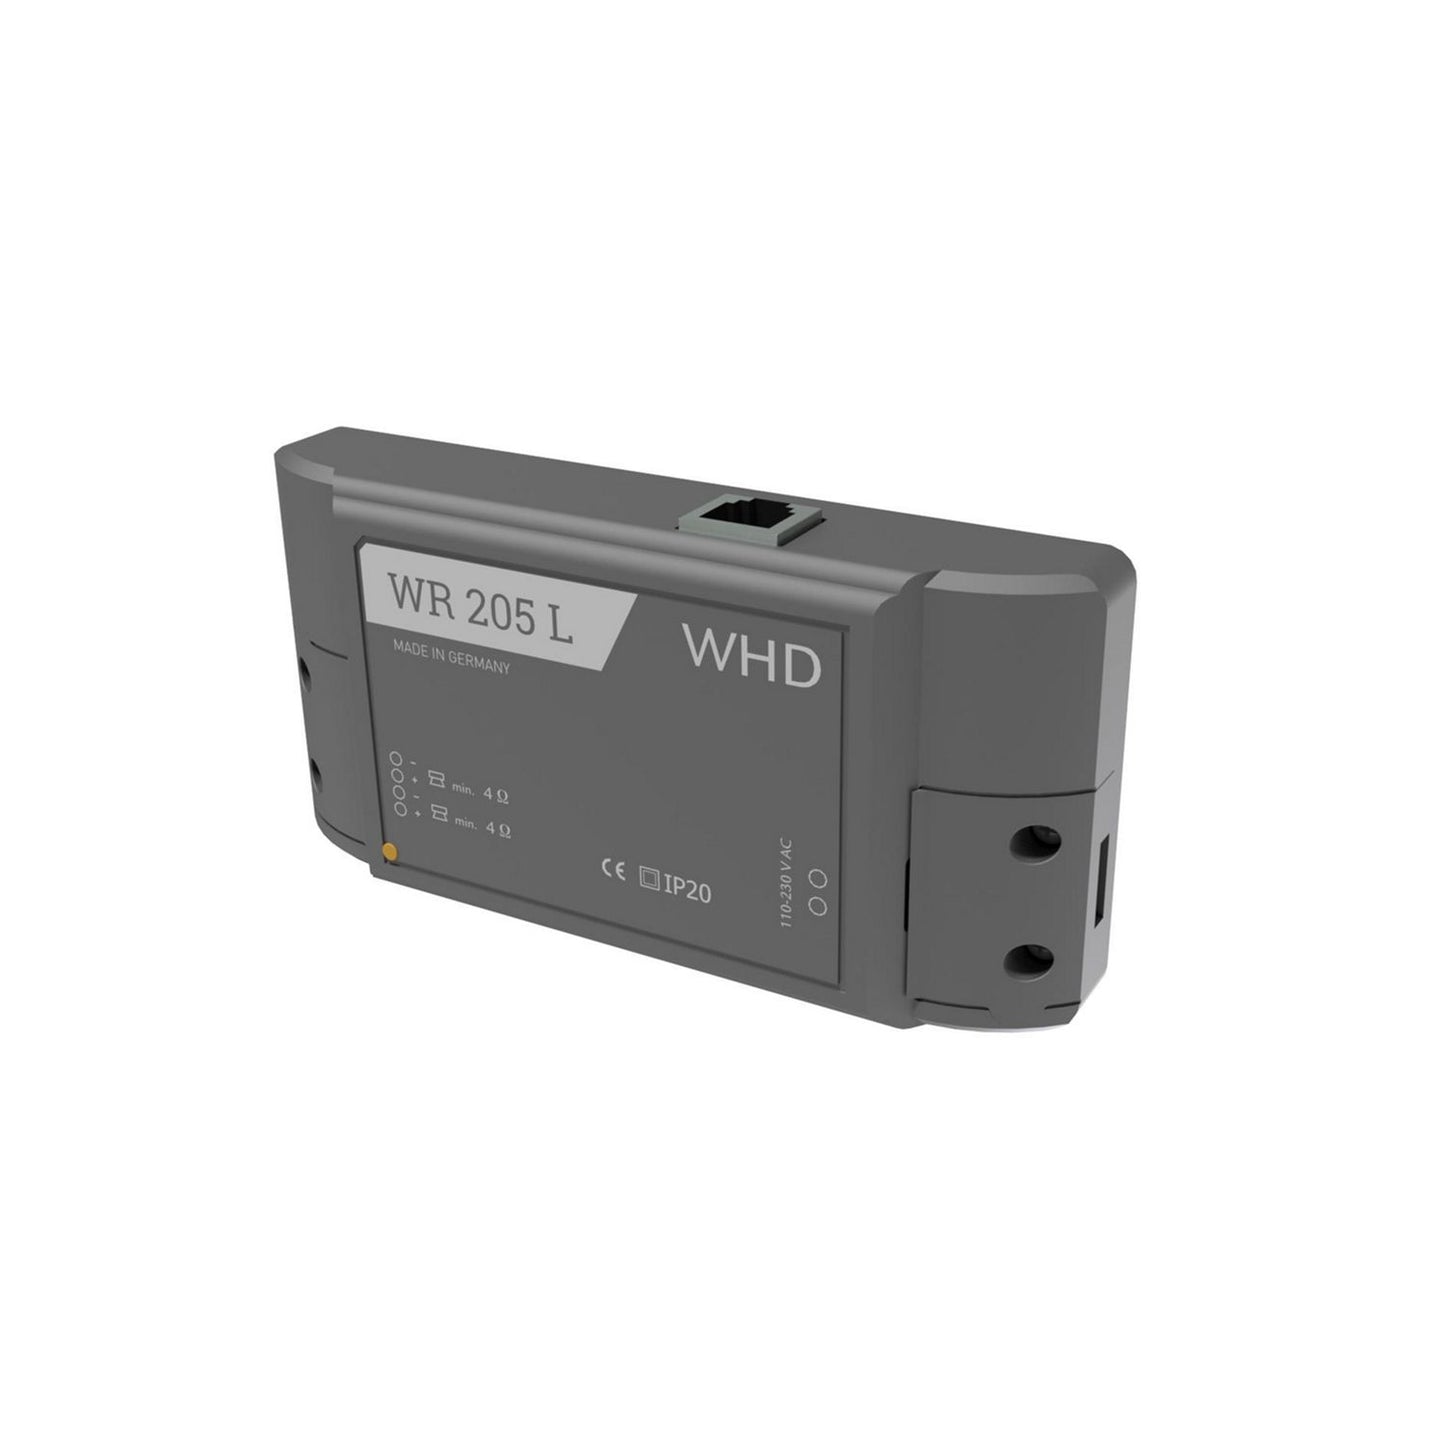 WHD WR 205 L Récepteur audio Bluetooth/WLAN avec amplificateur stéréo, noir